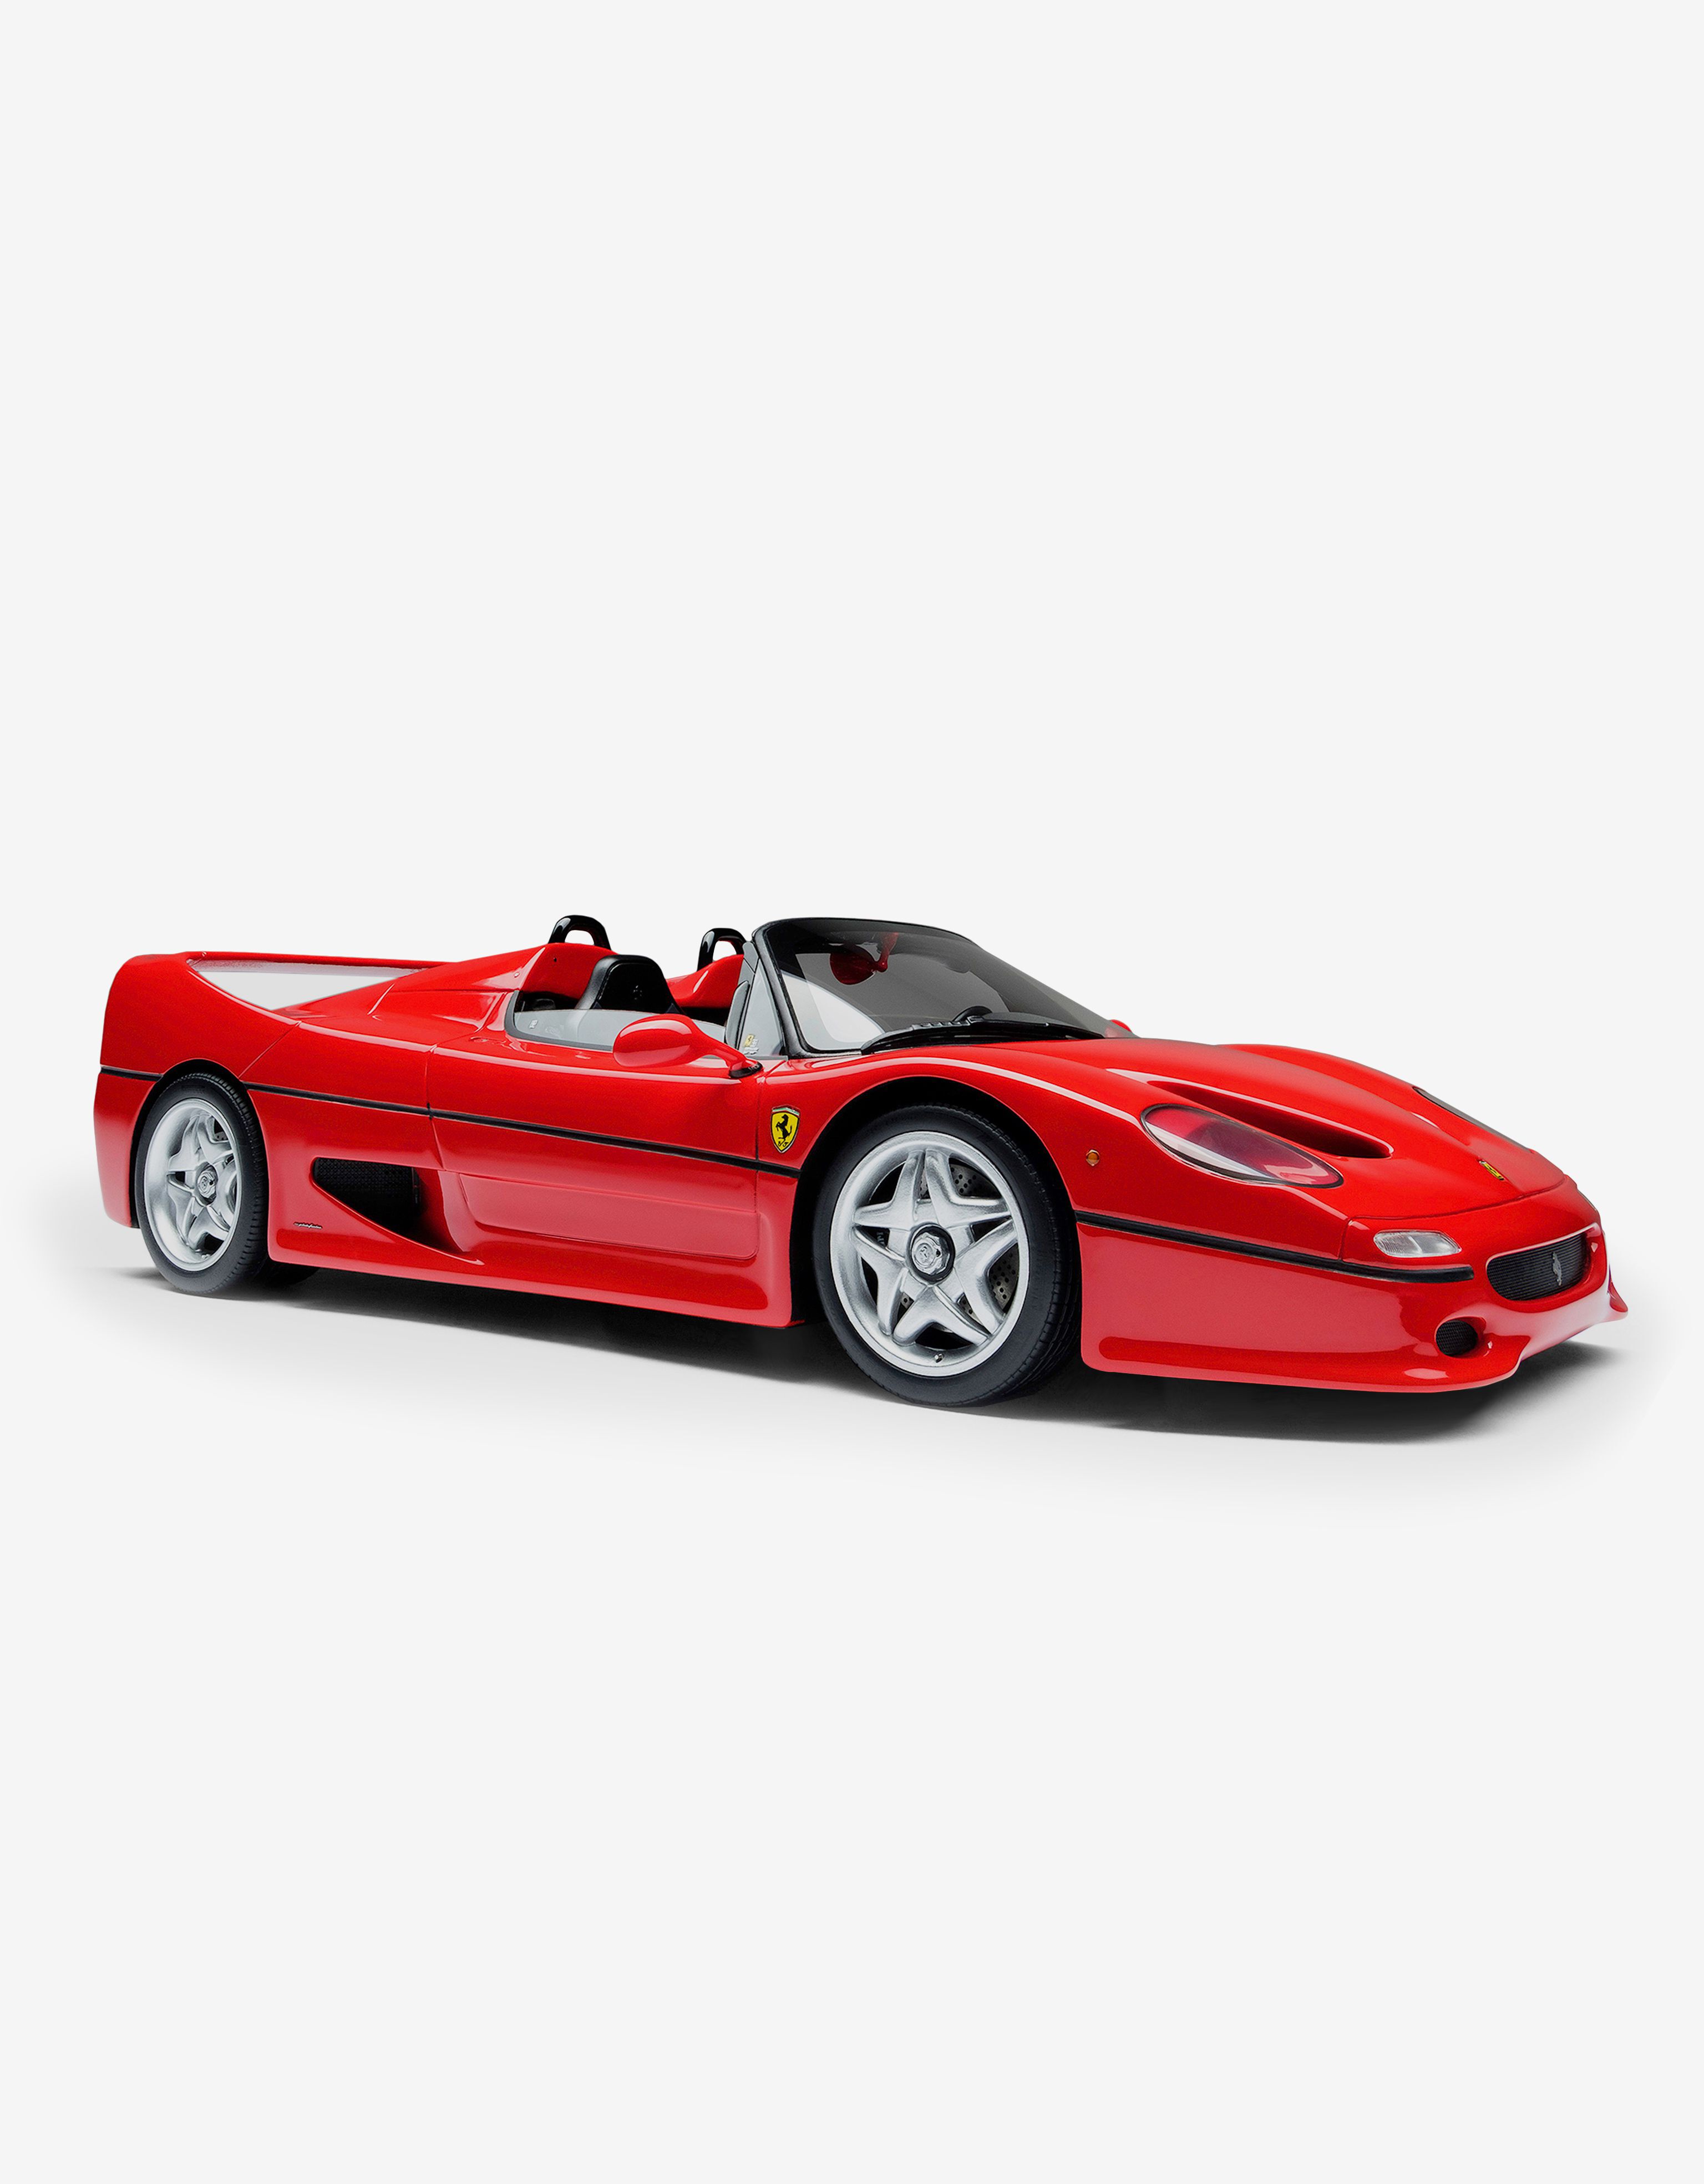 ${brand} Miniatura Ferrari F50 a escala 1:18 ${colorDescription} ${masterID}